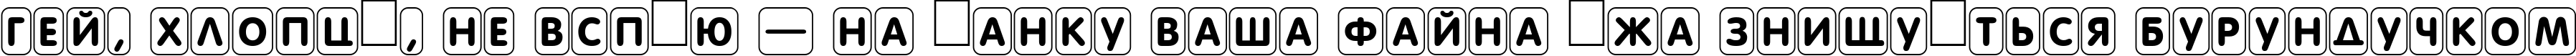 Пример написания шрифтом a_FuturaRoundTtlCmDFr текста на украинском